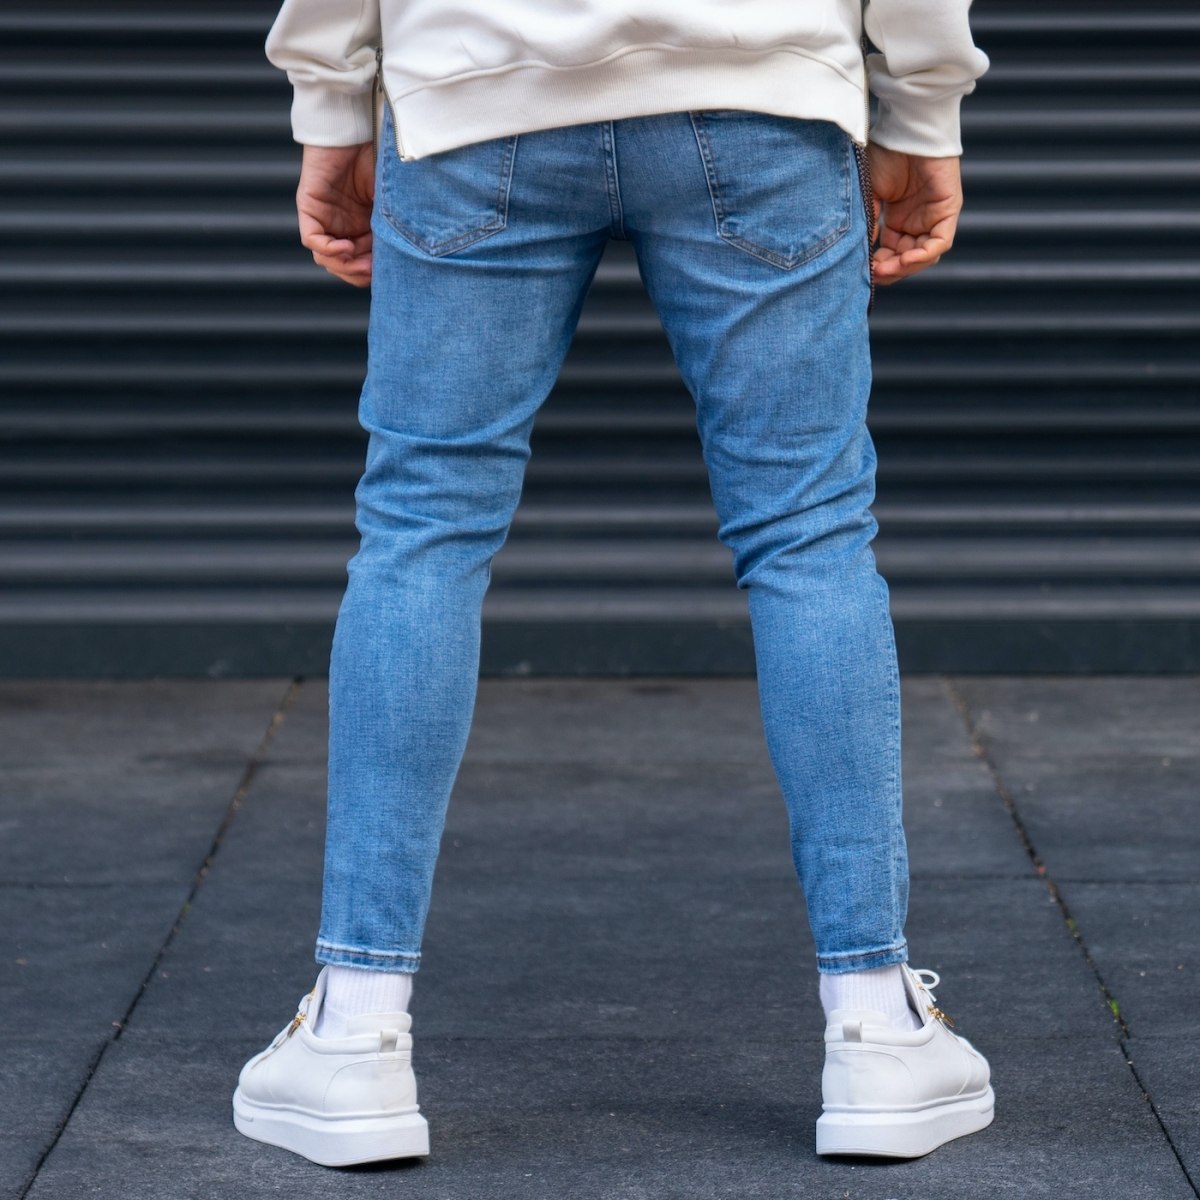 https://martinvalen.com/20348-large_default/men-s-light-stone-washed-blue-jeans.jpg